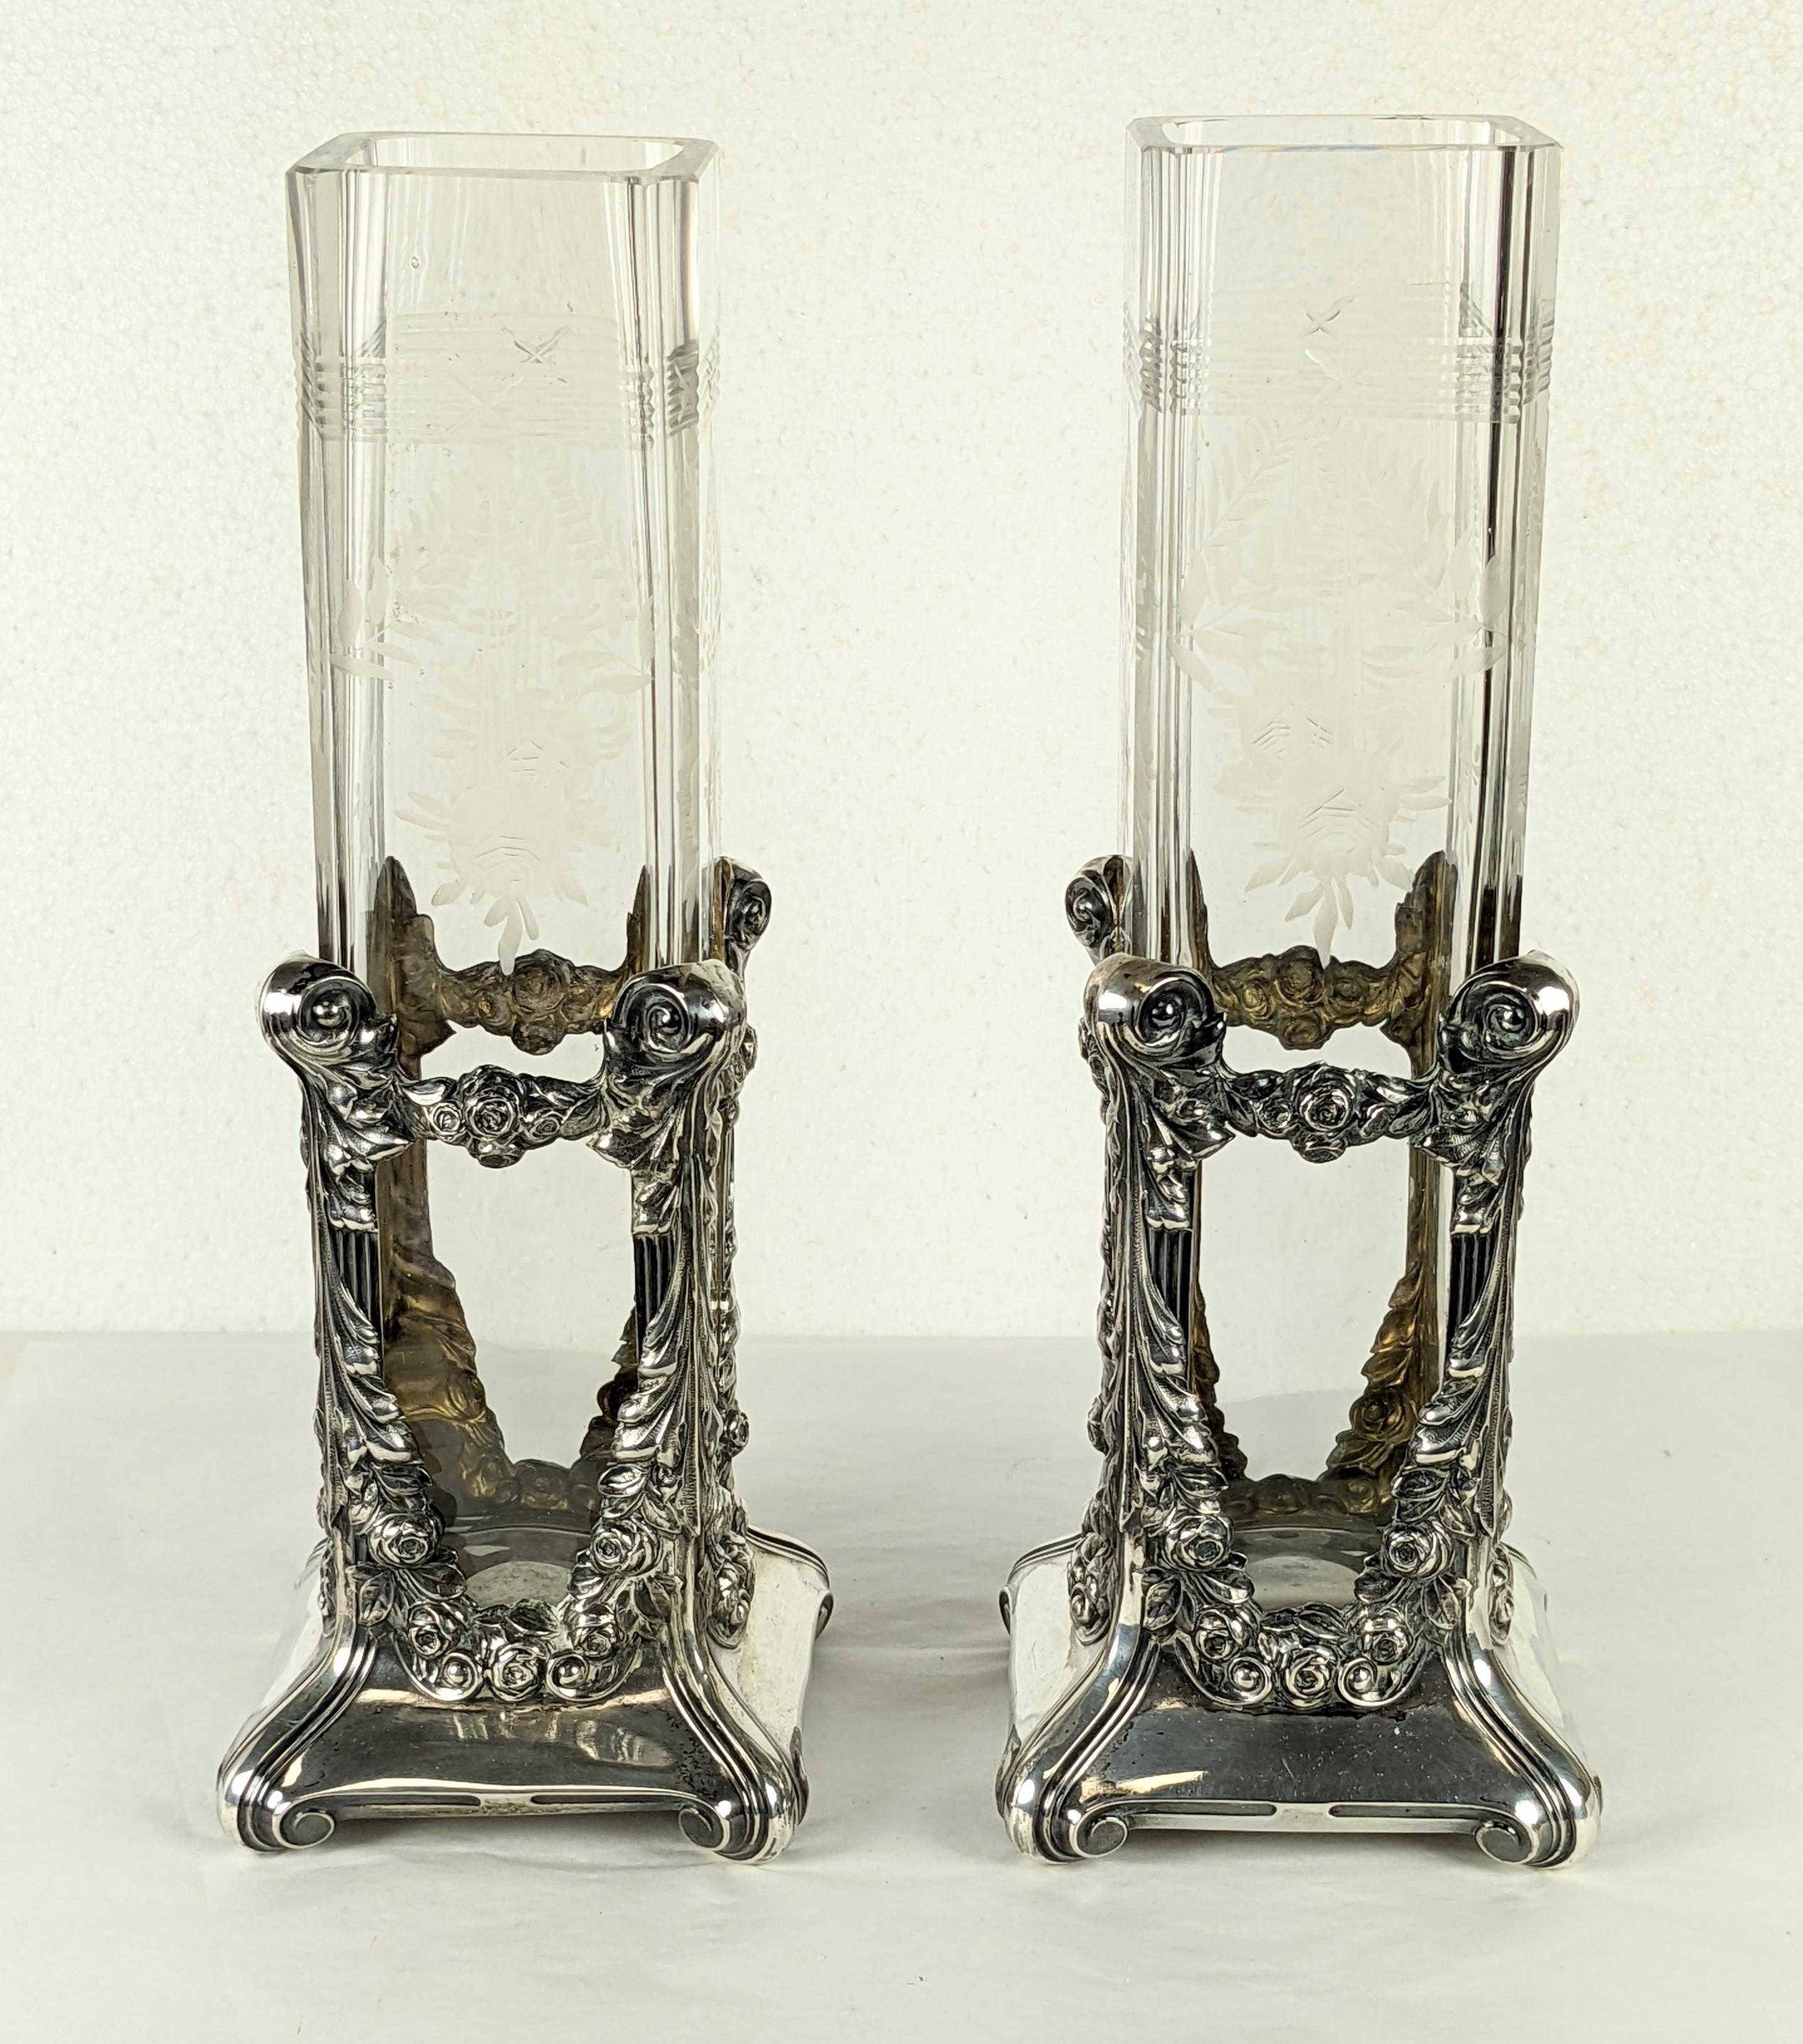 Paire de vases en sterling avec revêtement en verre, datant de la fin du XIXe siècle. Magnifique travail de repoussé avec des guirlandes florales et des volutes. La doublure comporte des détails en verre gravé représentant des guirlandes de feuilles